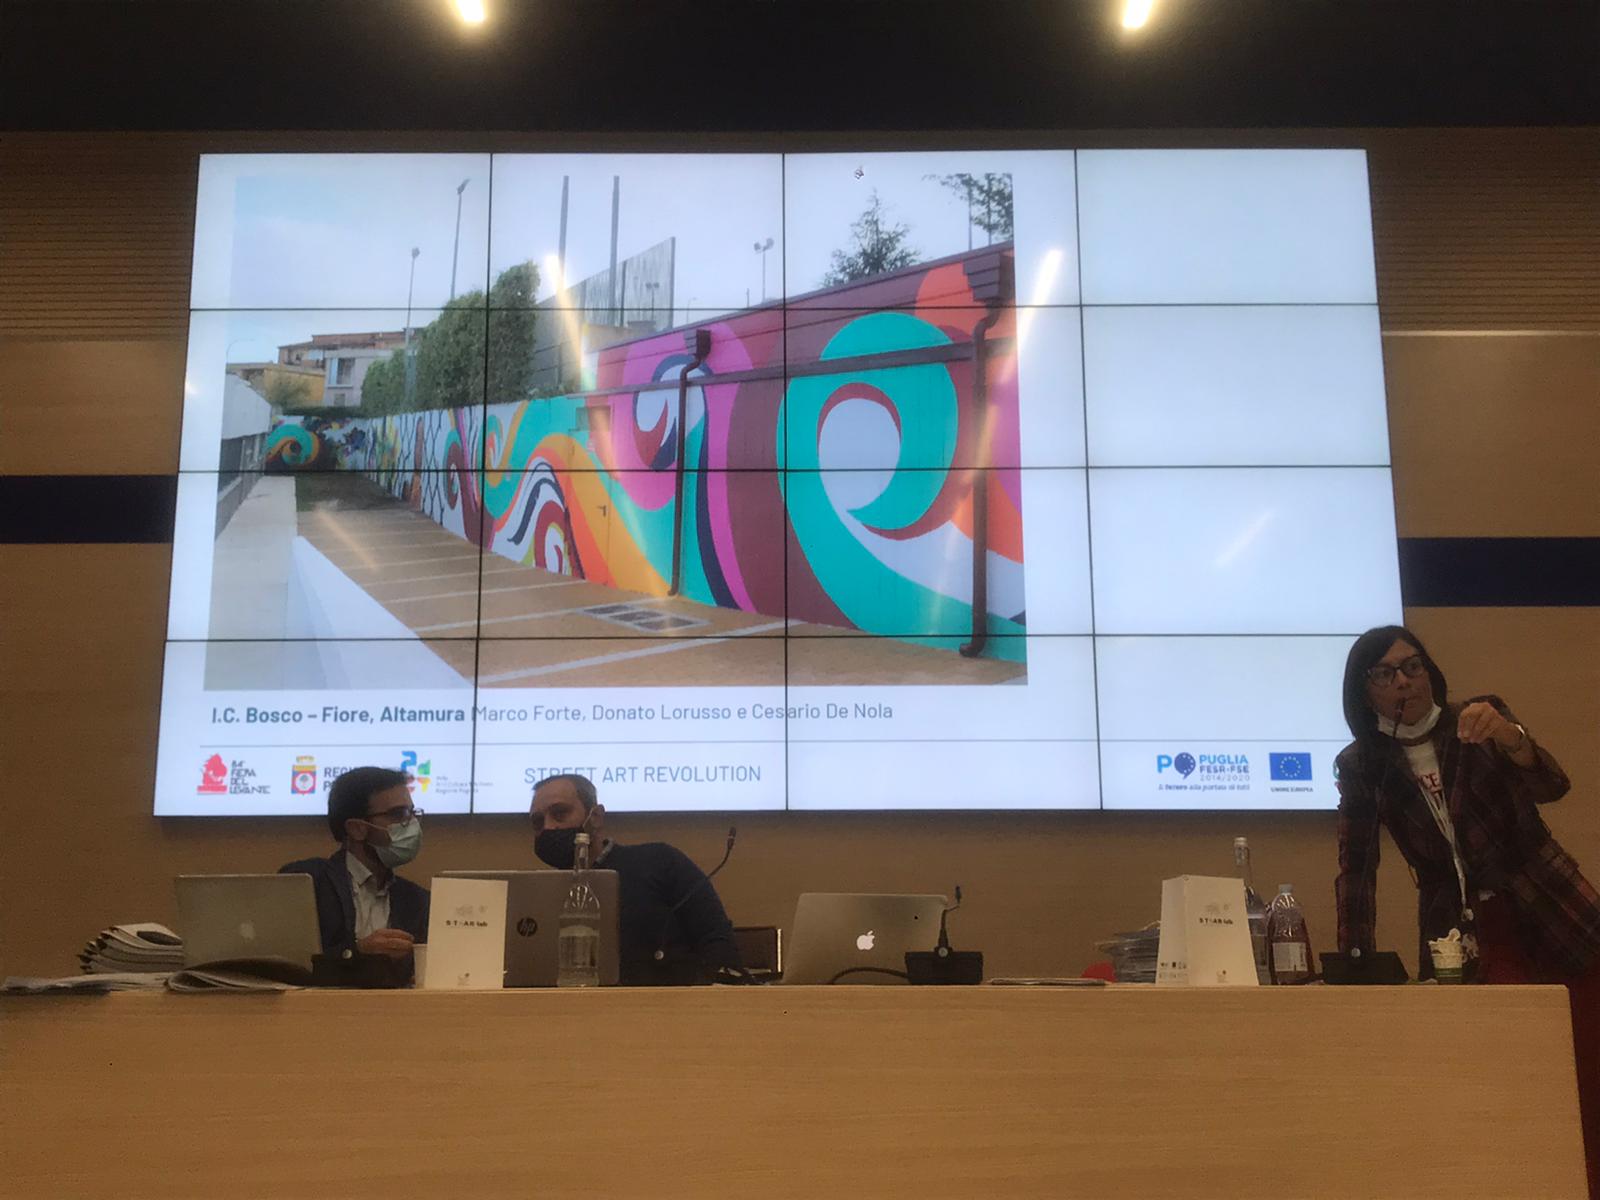 Galleria PACT – Polo delle Arti, Cultura e del Turismo 84esima Fiera del Levante di Bari   Street Art devolution - Diapositiva 3 di 5